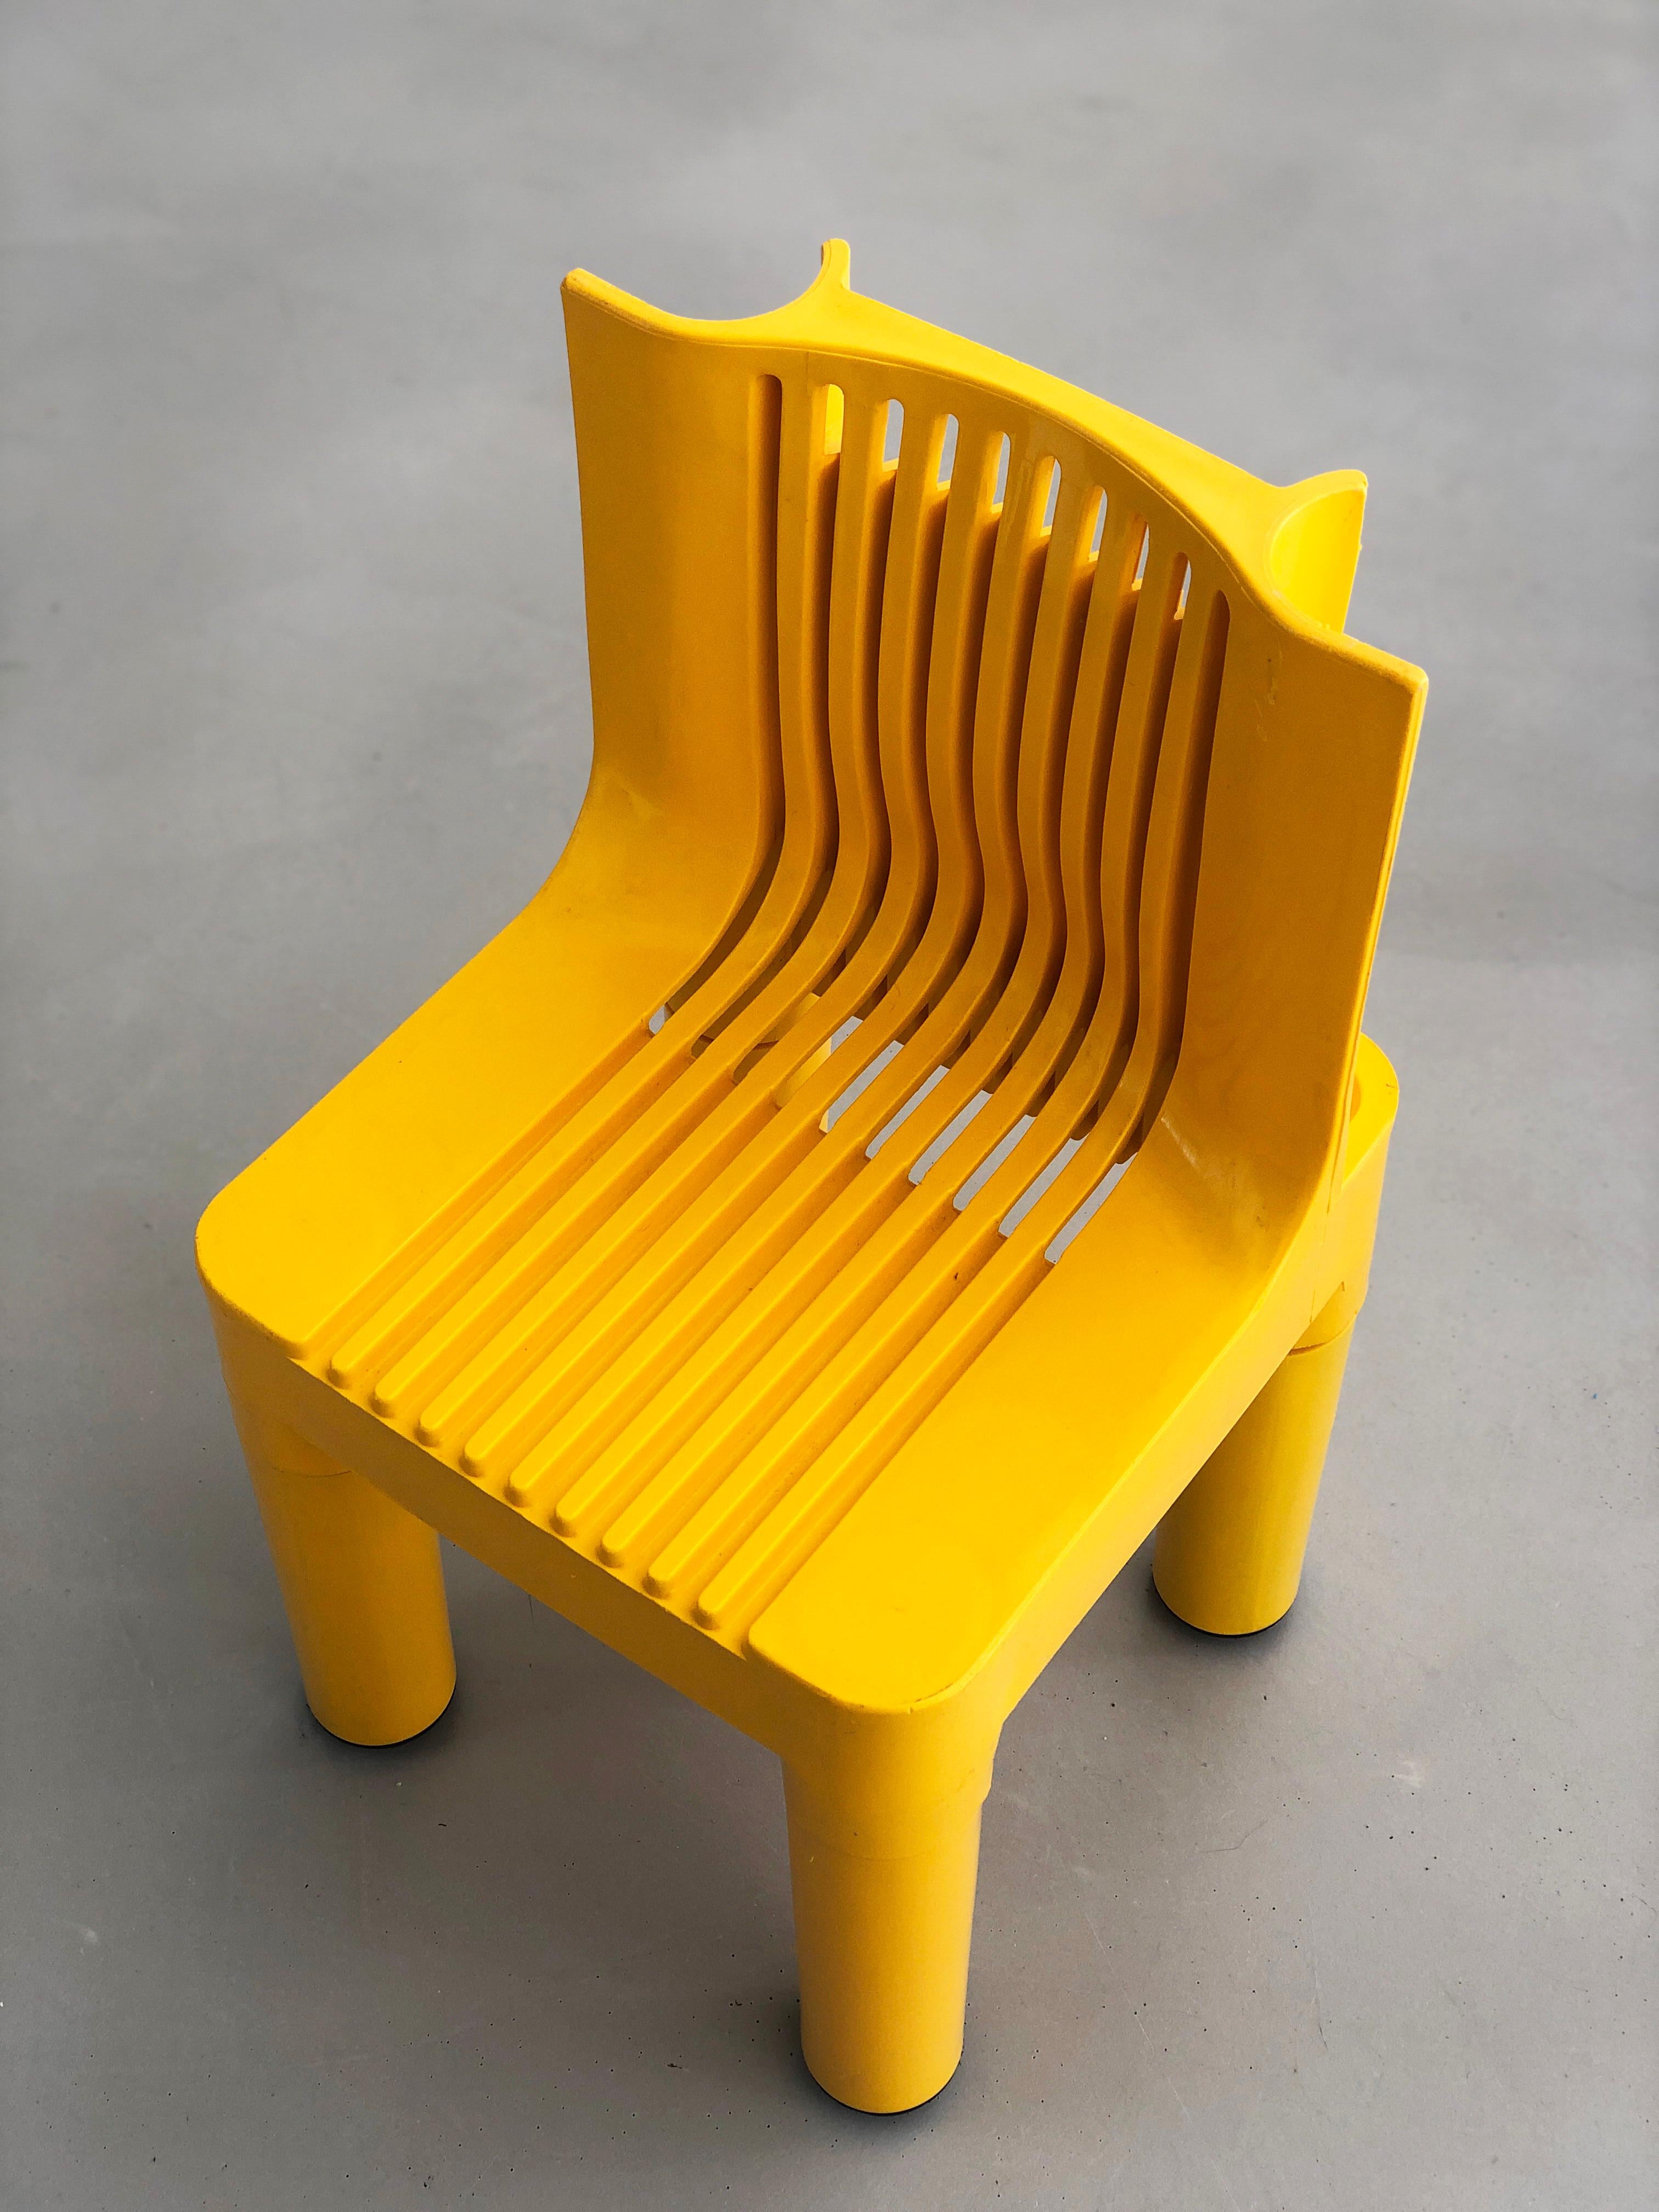 Molded Child chair K 1340 (later 4999) Kartell Marco Zanuso / Richard Sapper 1964 For Sale